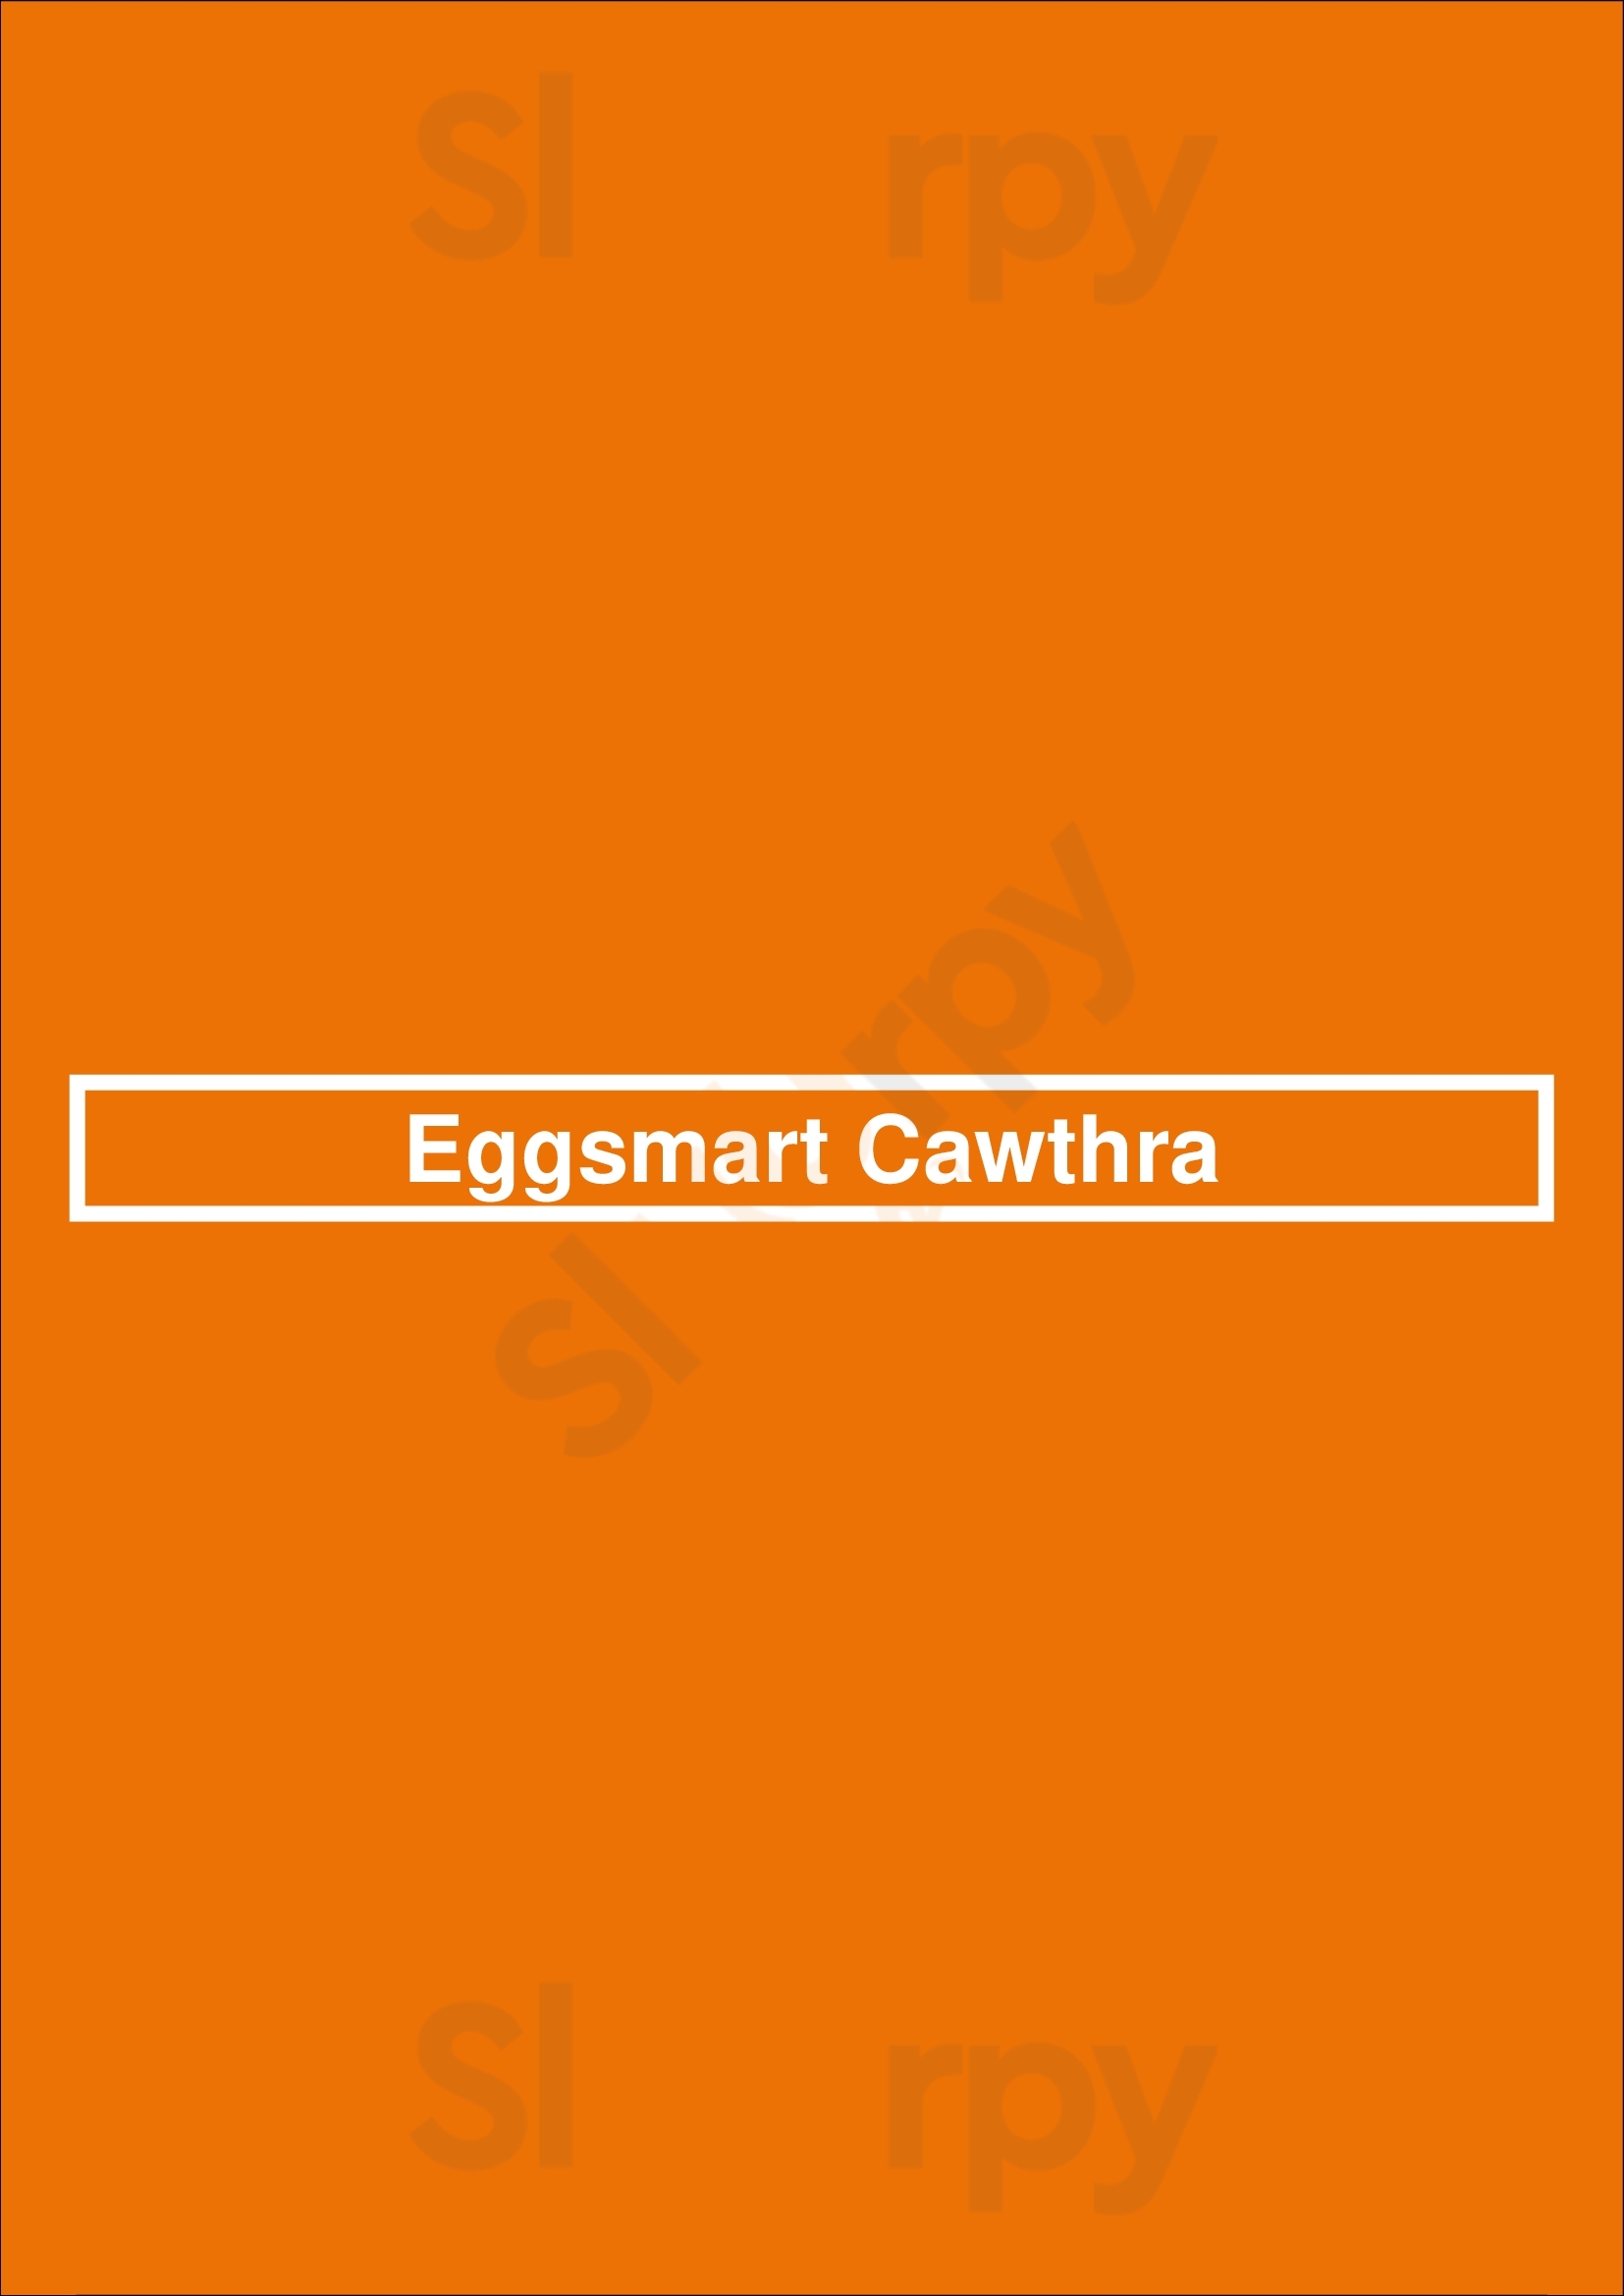 Eggsmart Cawthra Mississauga Menu - 1